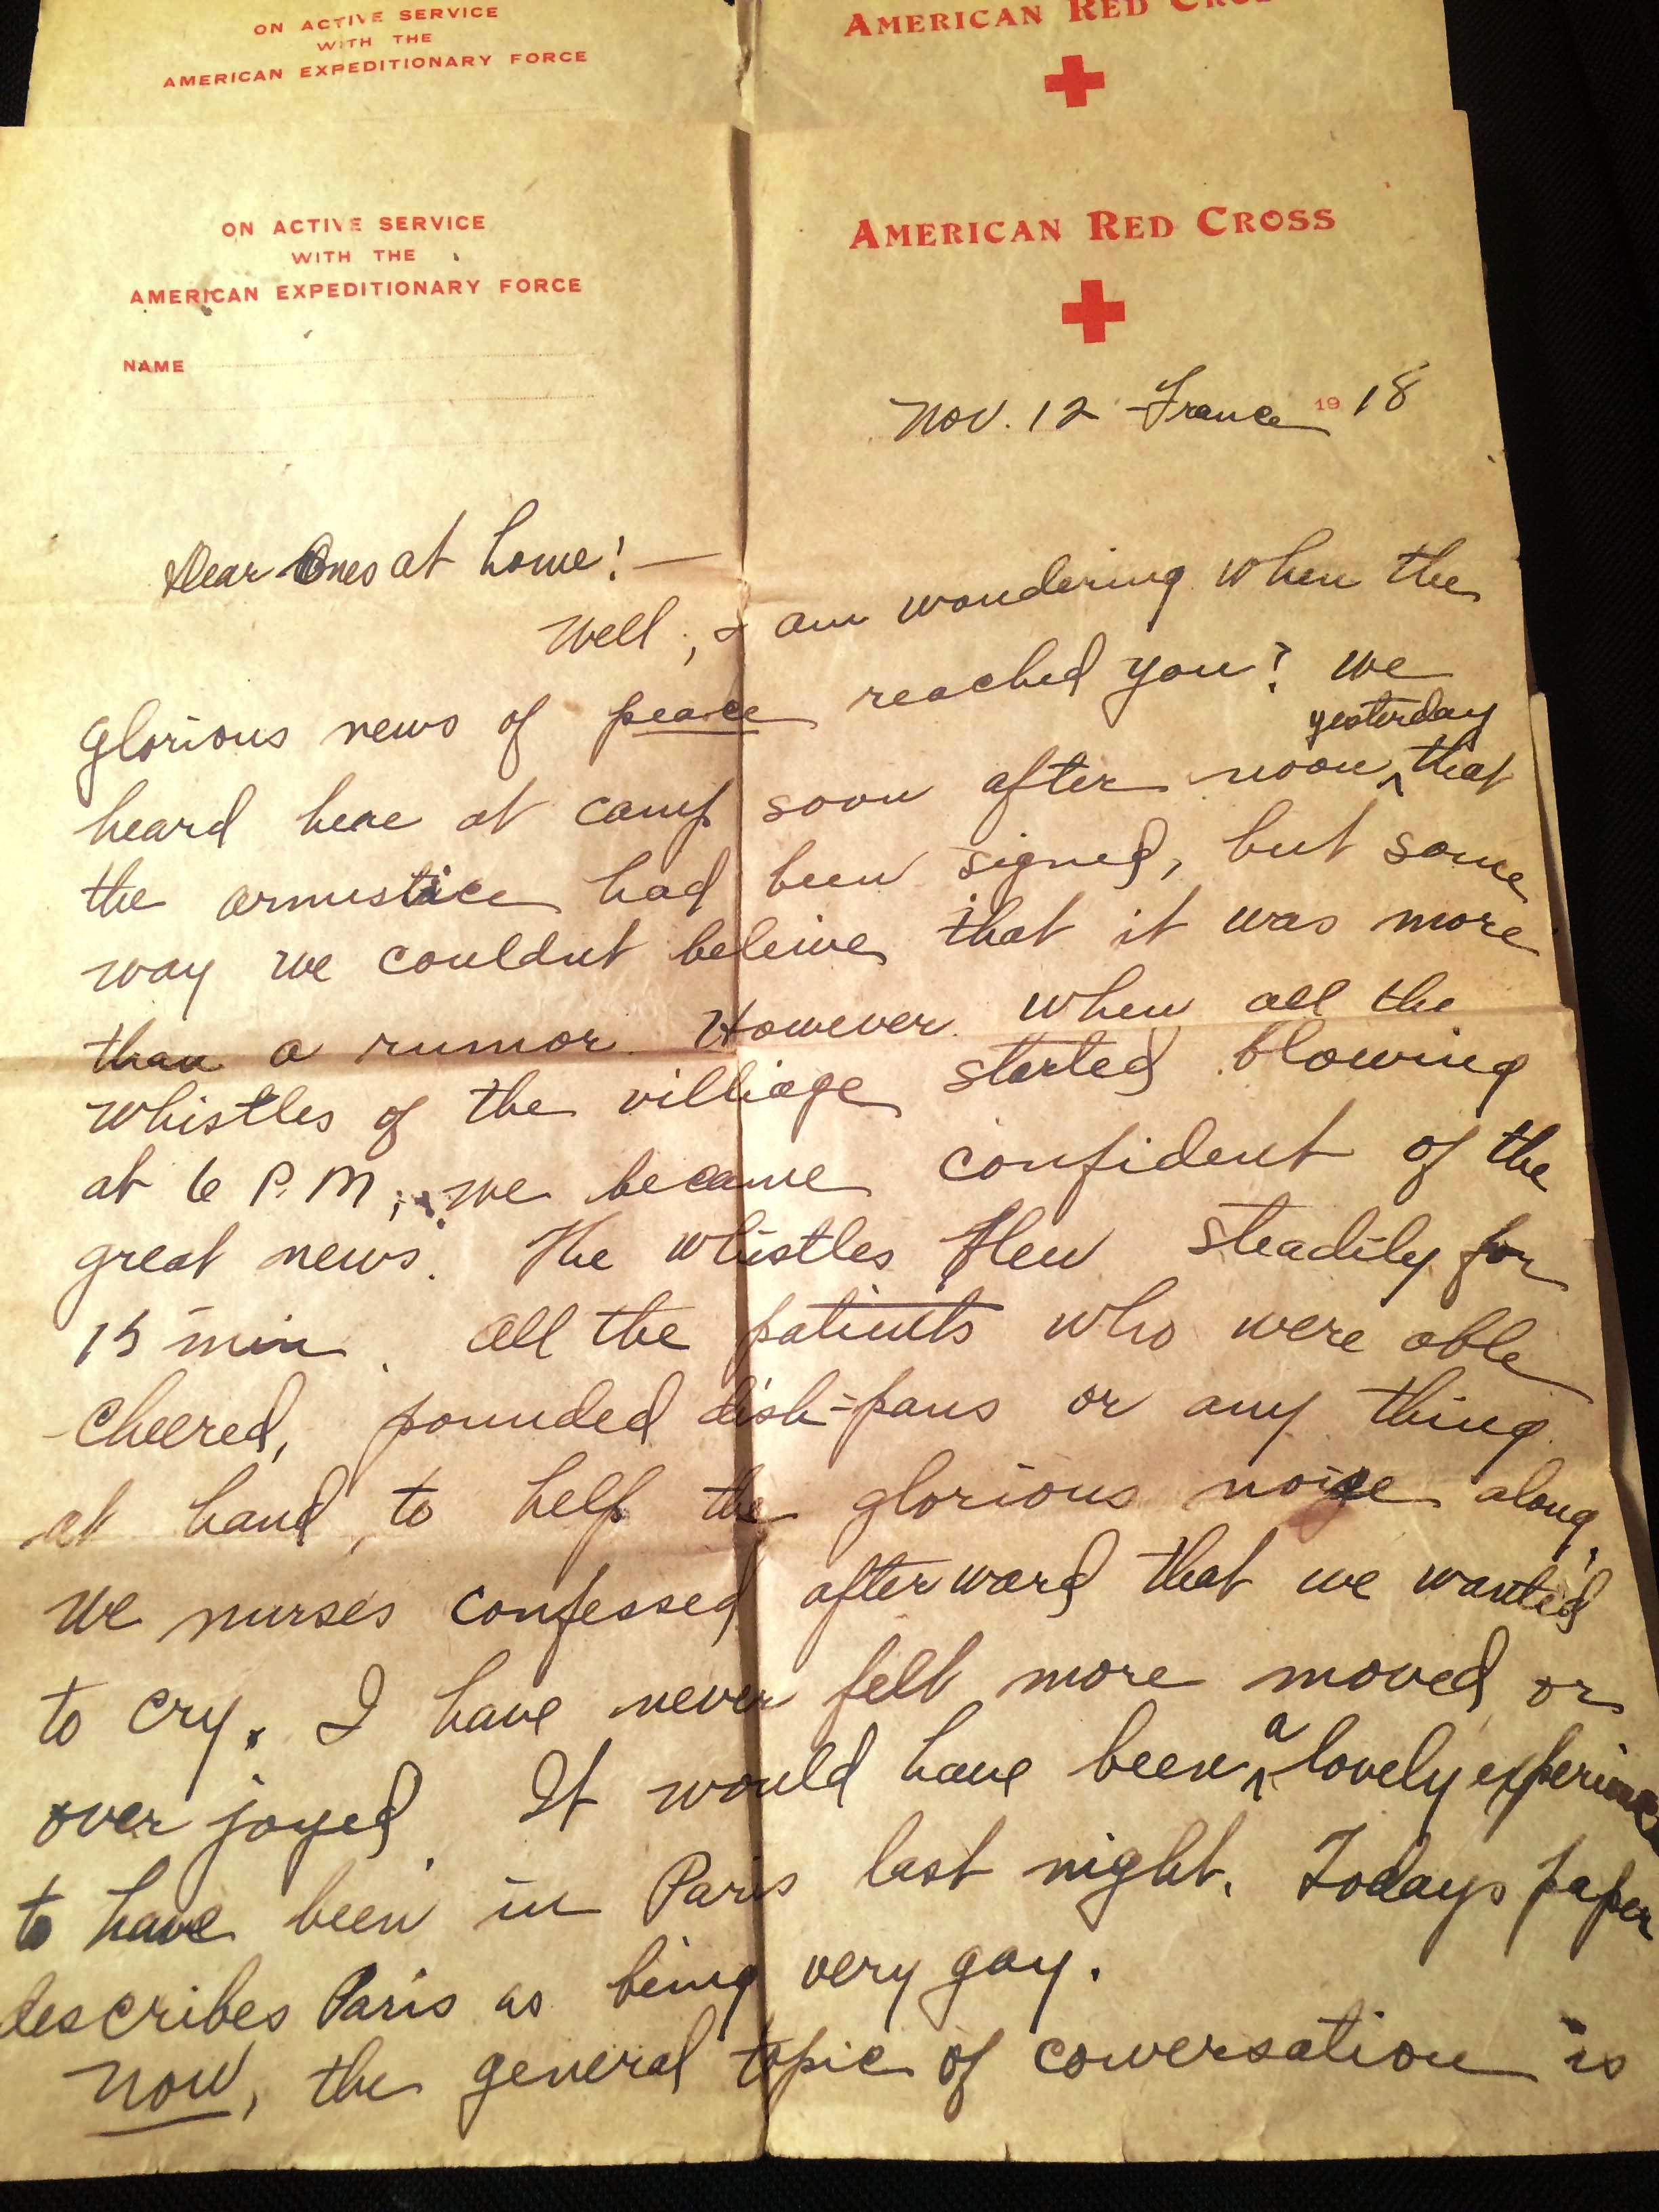 letter written November 12, 1918